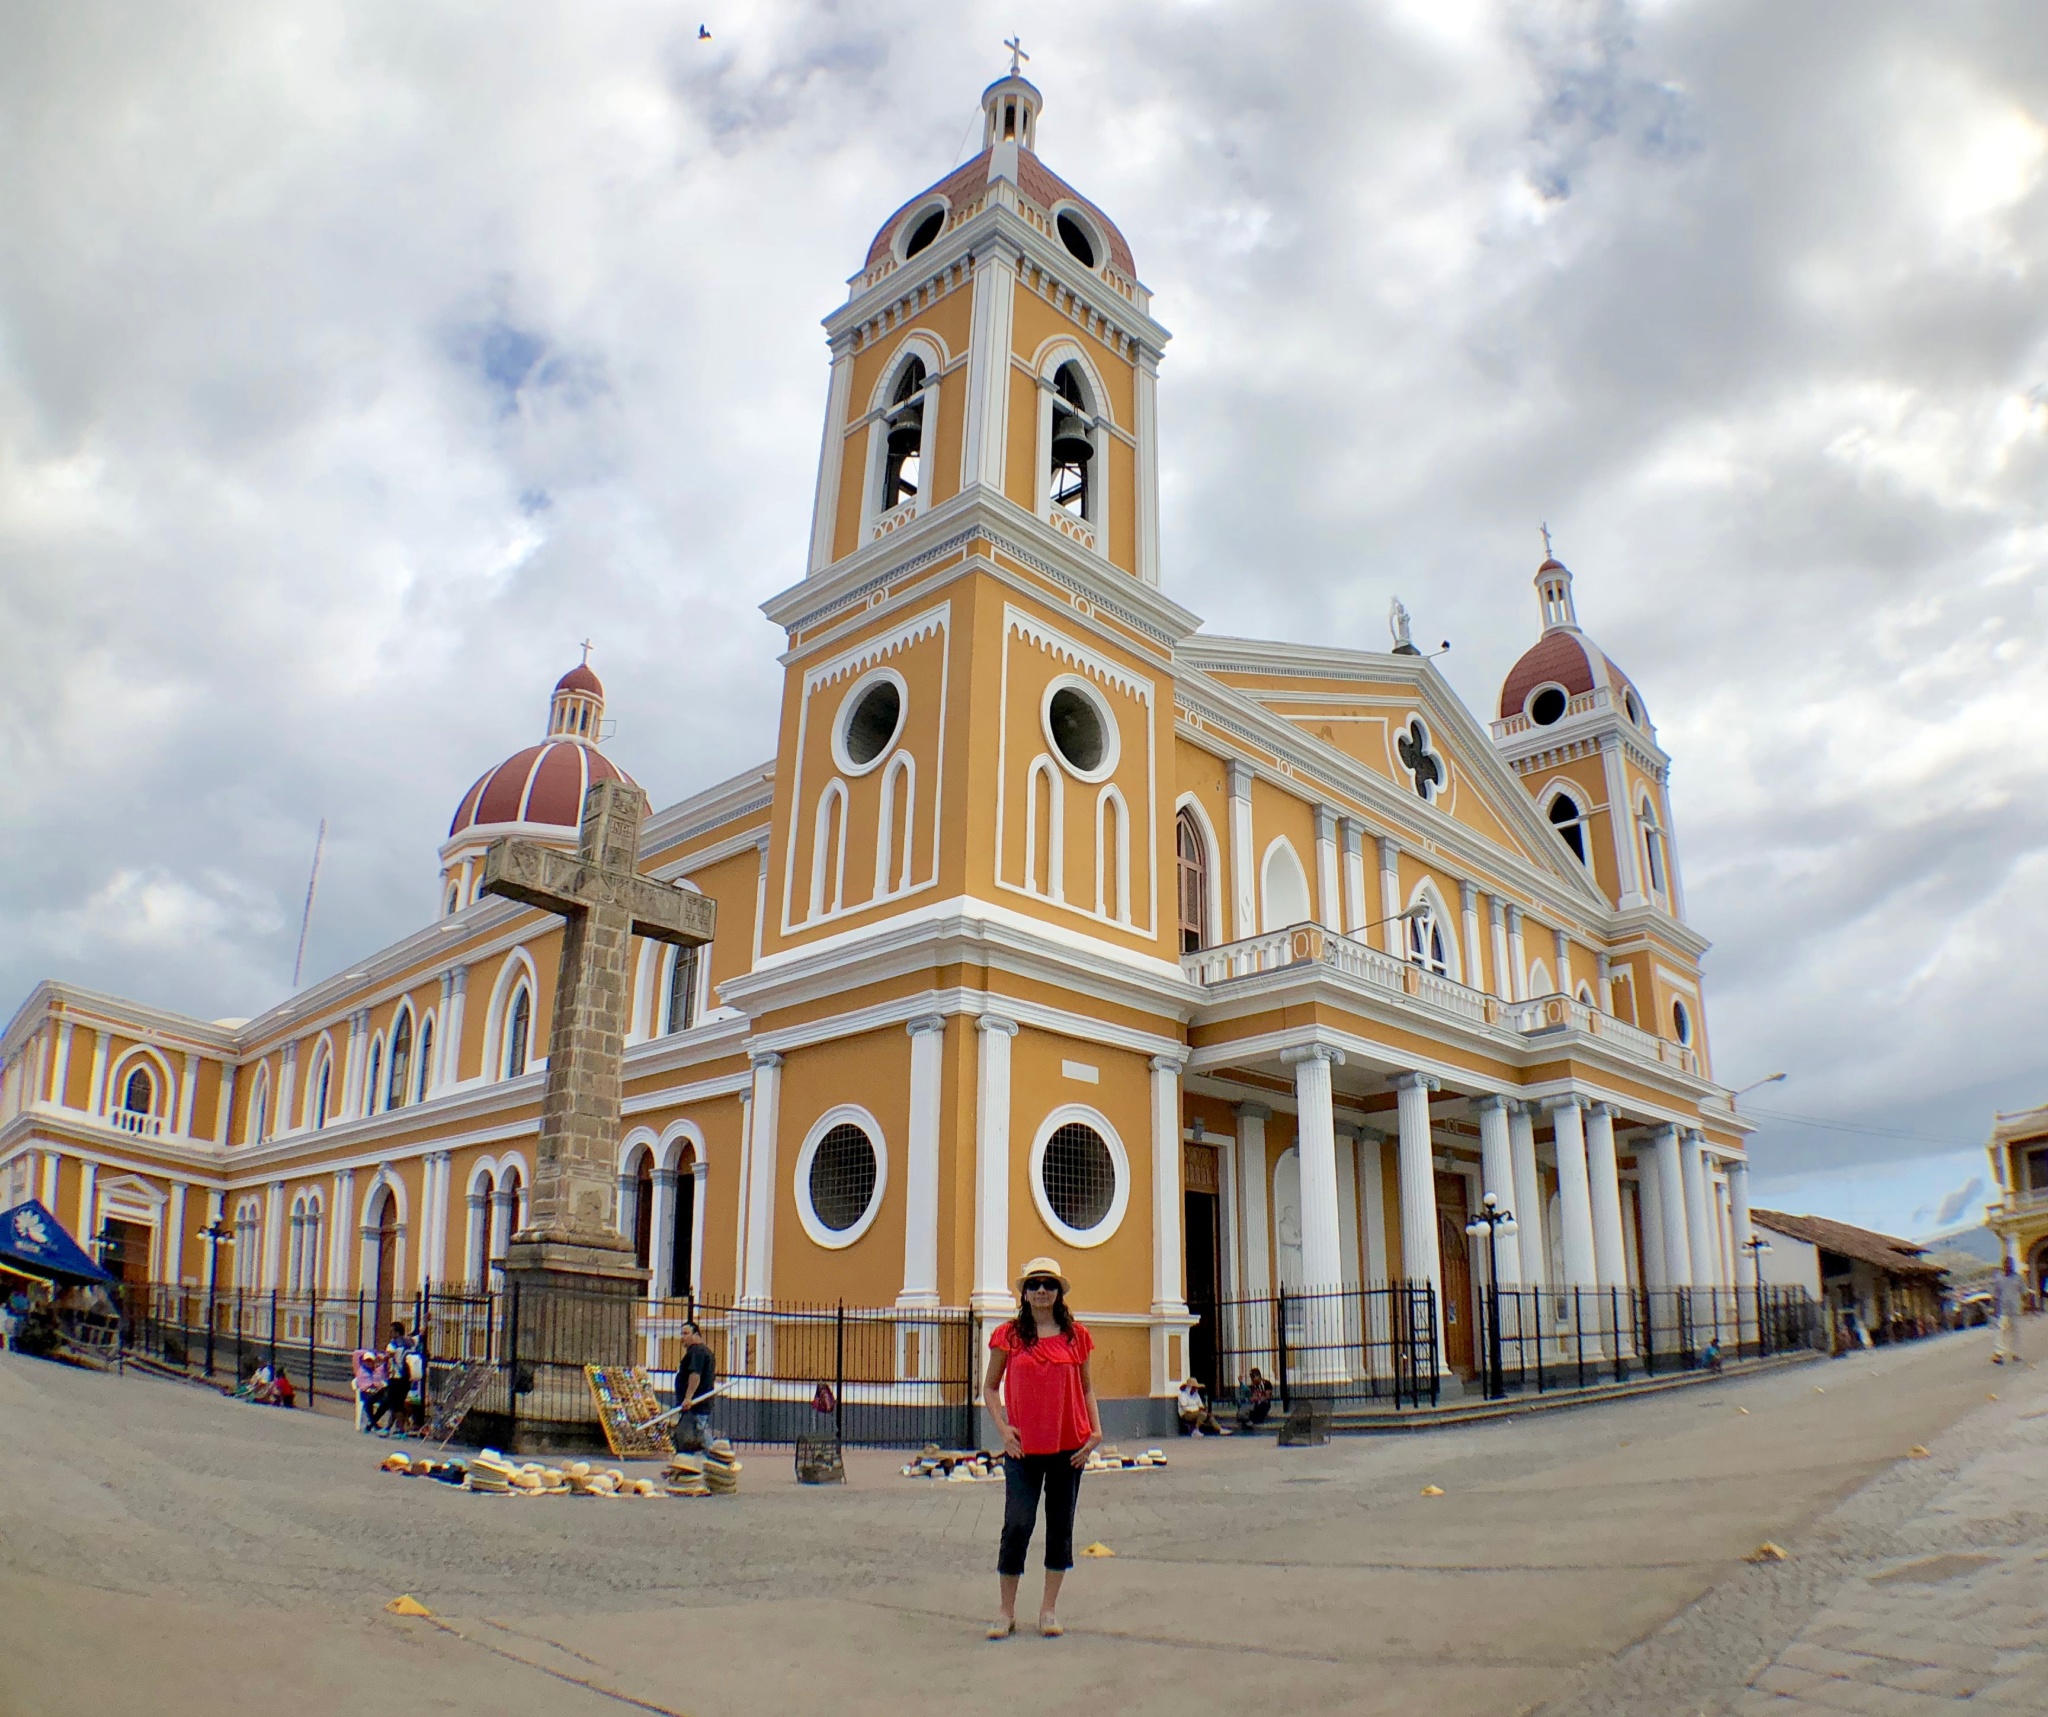 City of Granada in Nicaragua